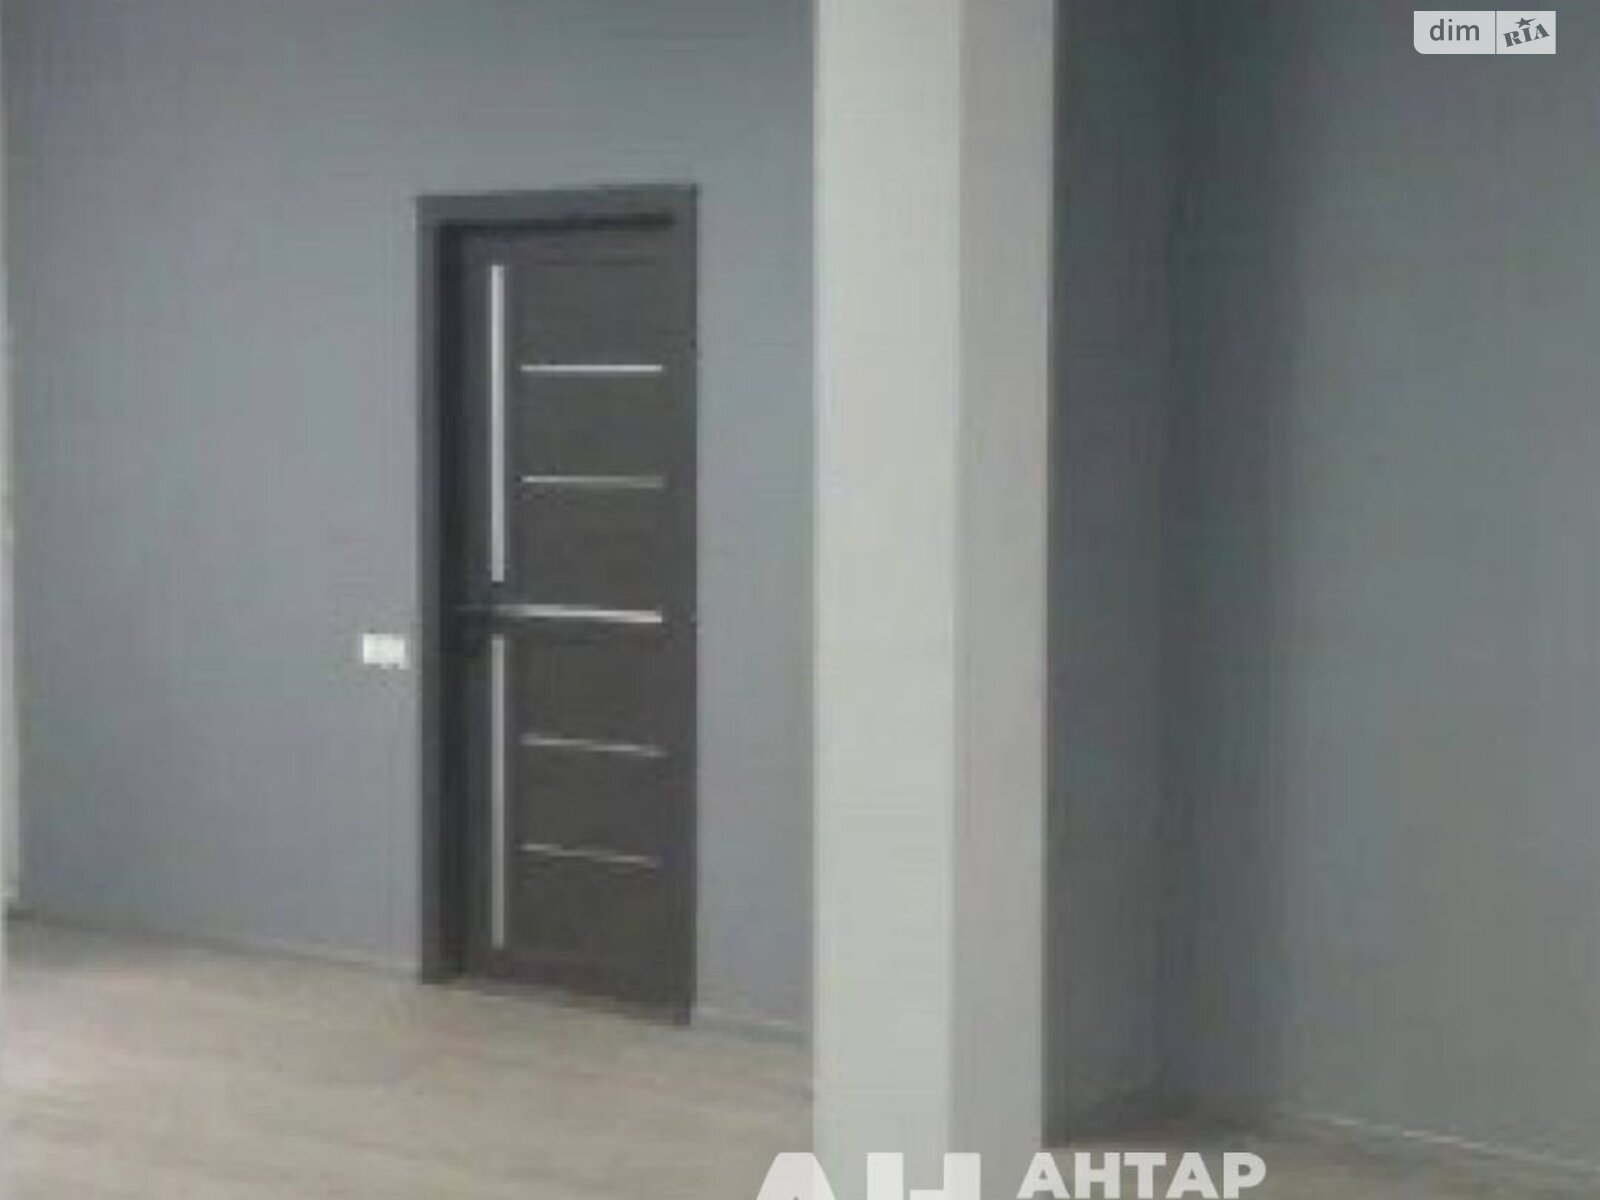 Аренда офисного помещения в Кропивницком, Черновола Вячеслава улица, помещений -, этаж - 1 фото 1